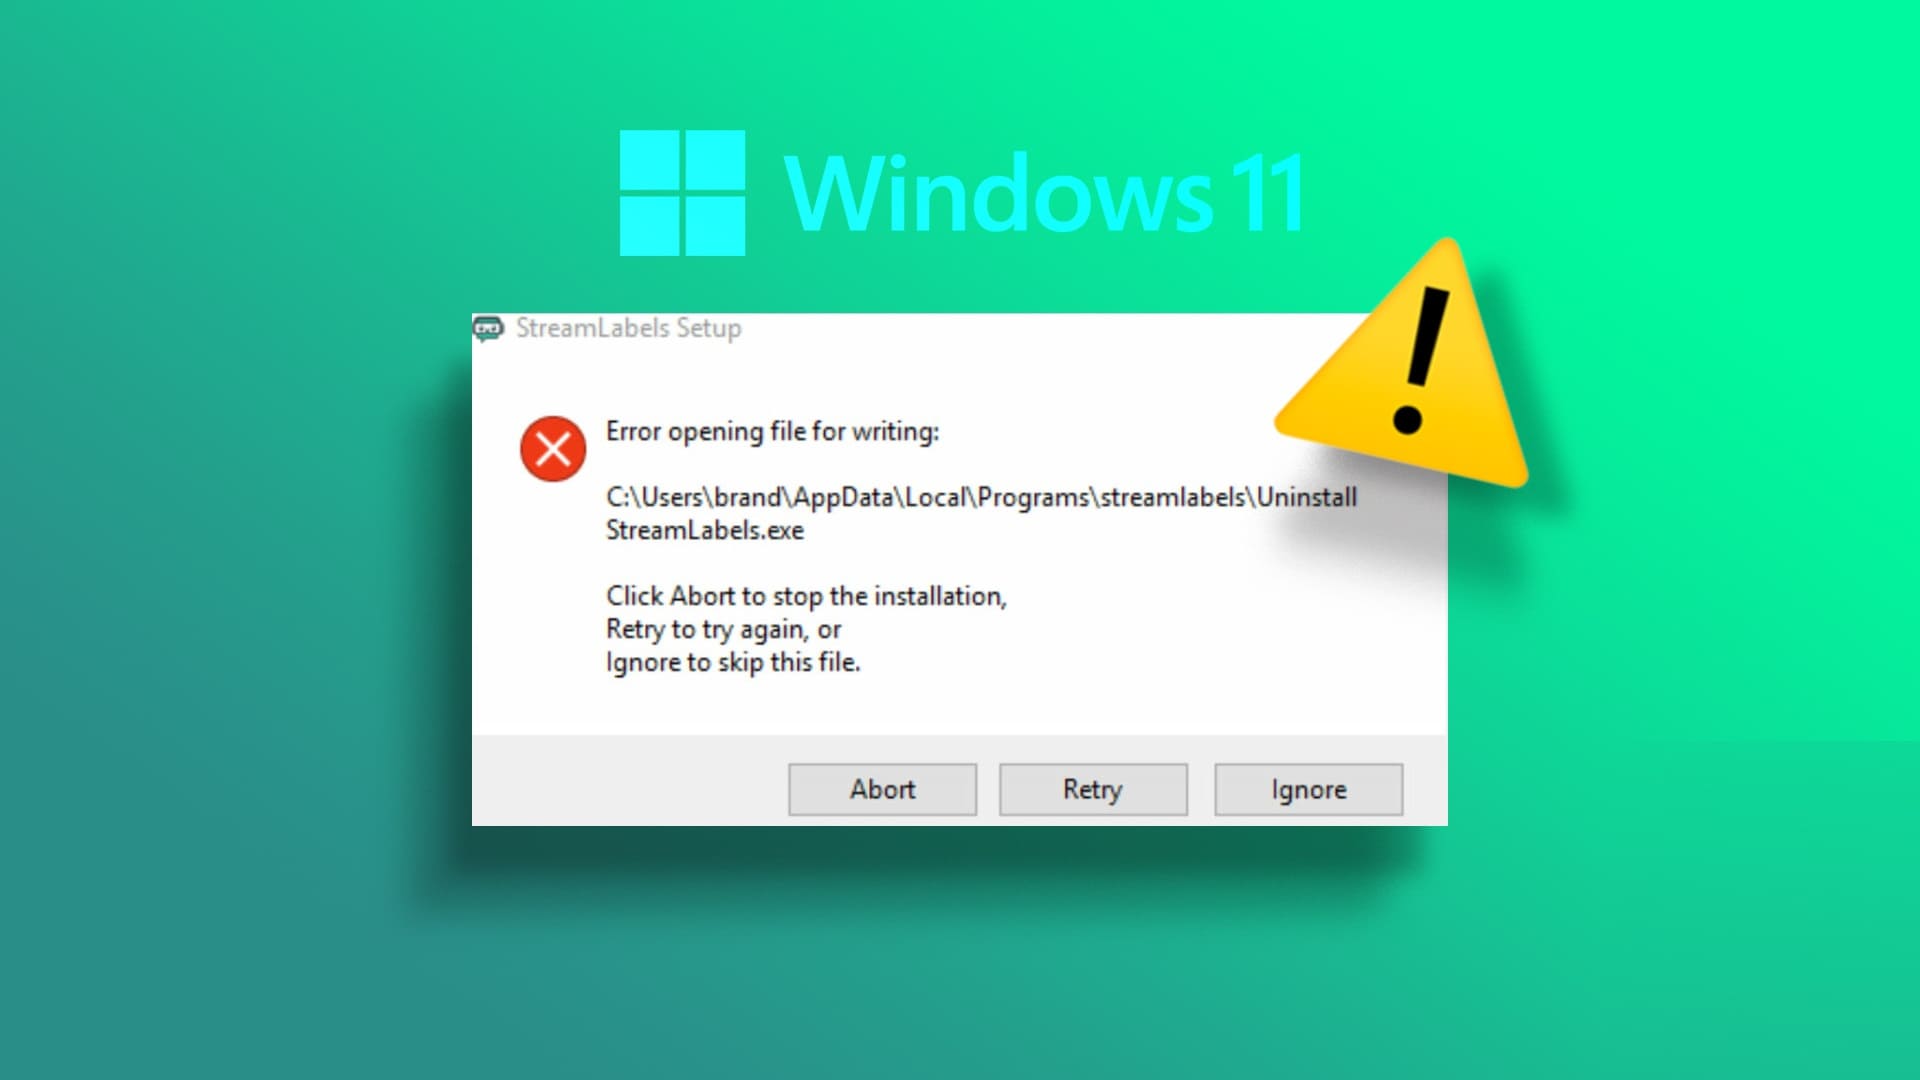 أفضل 7 طرق لإصلاح خطأ في فتح الملف للكتابة في Windows 11 - %categories